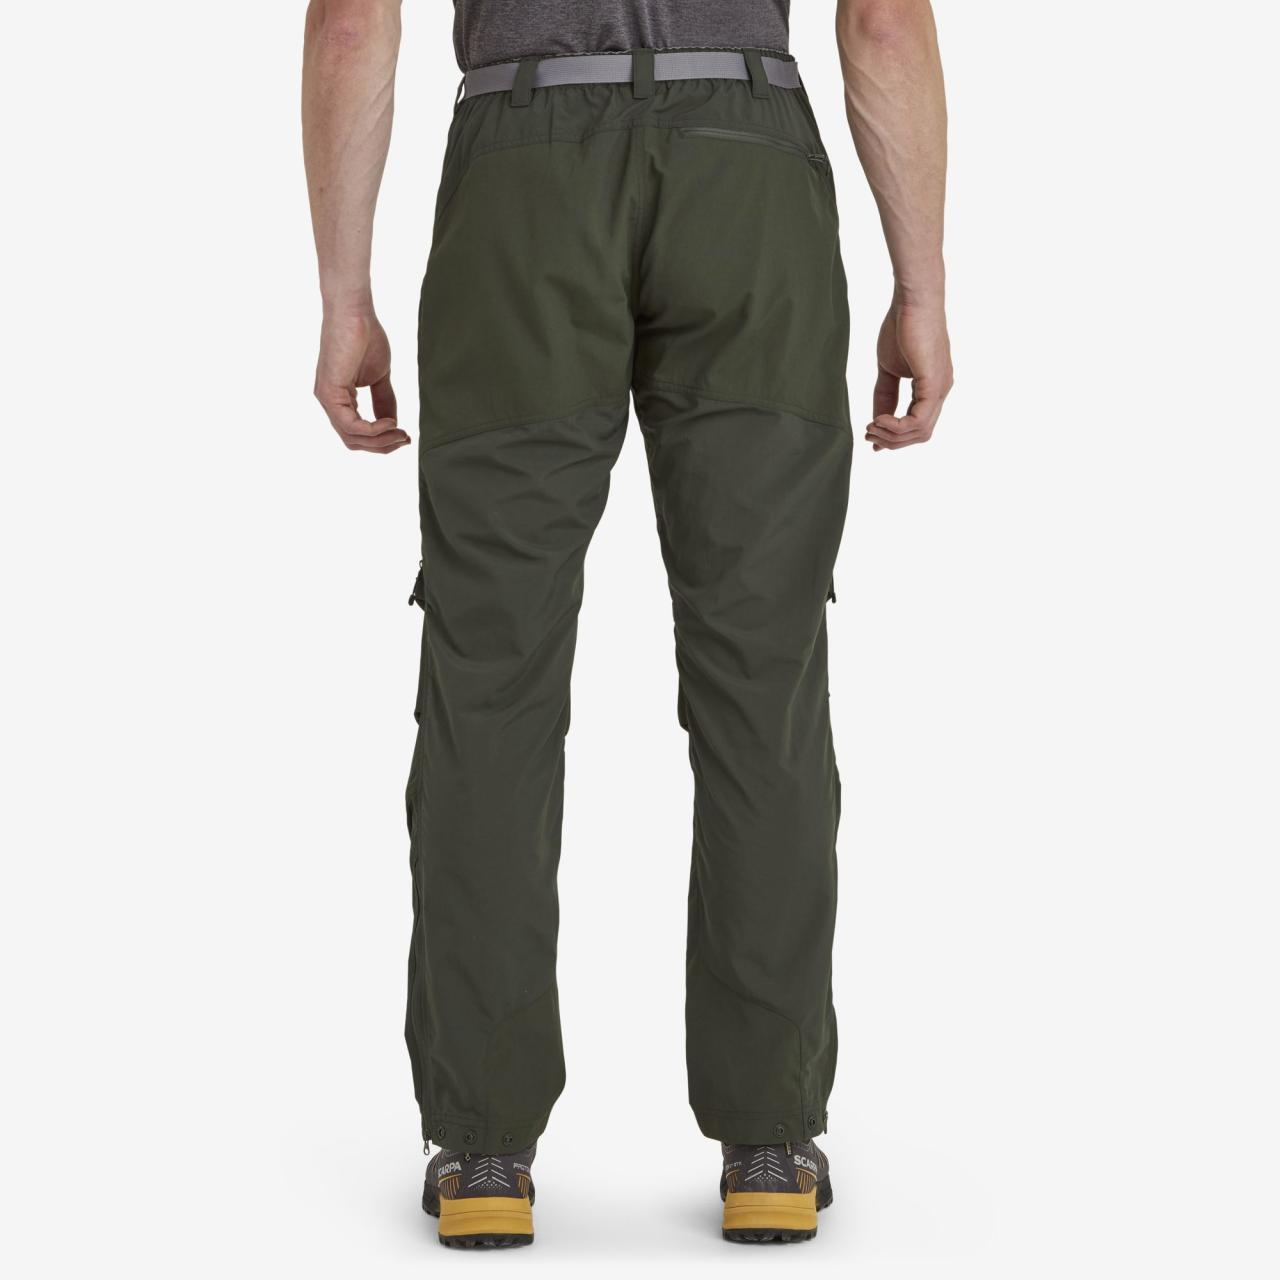 TERRA PANTS SHORT LEG-OAK GREEN-30/S pánské kalhoty zelené